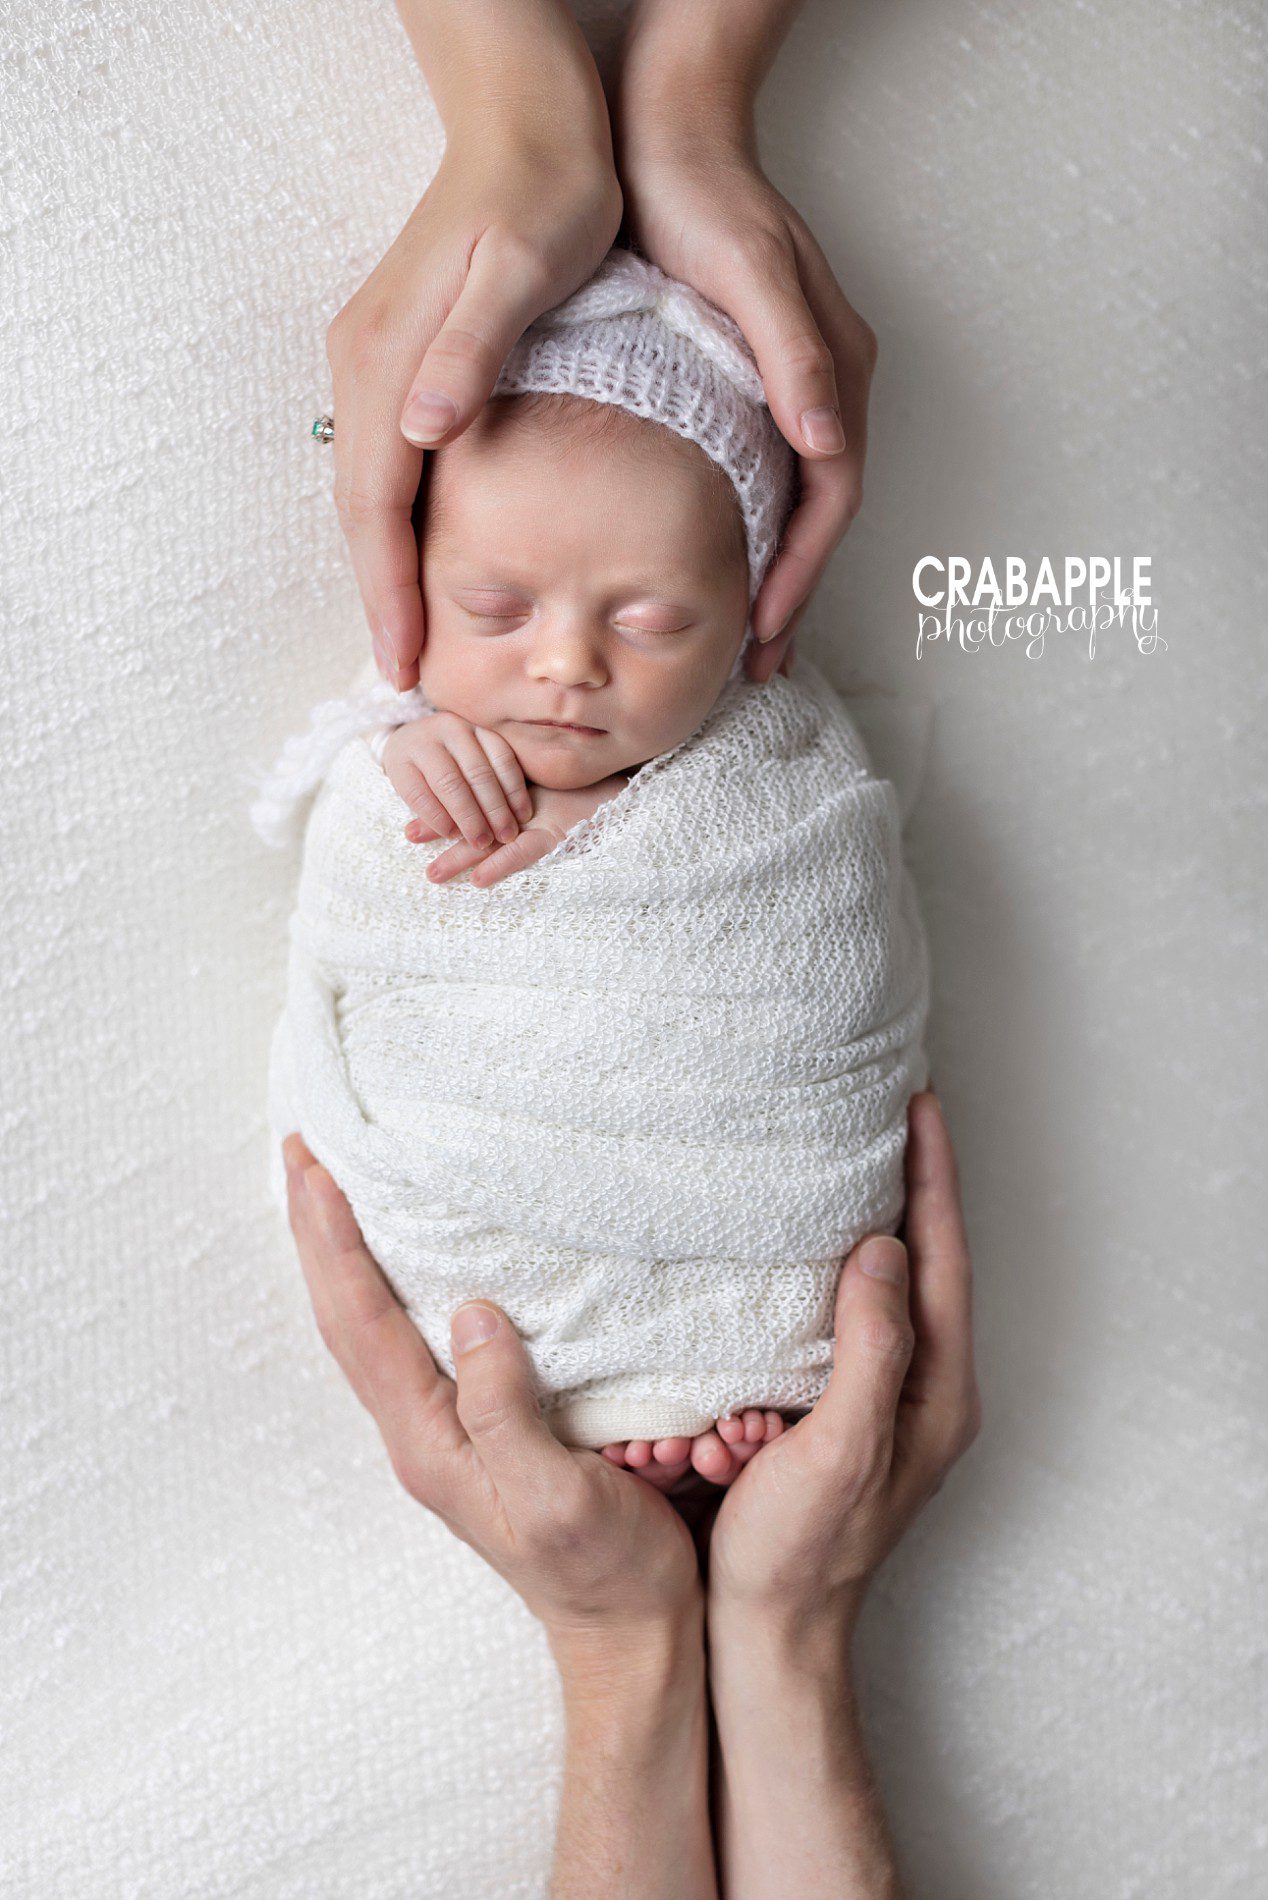 pose ideas for newborn photos